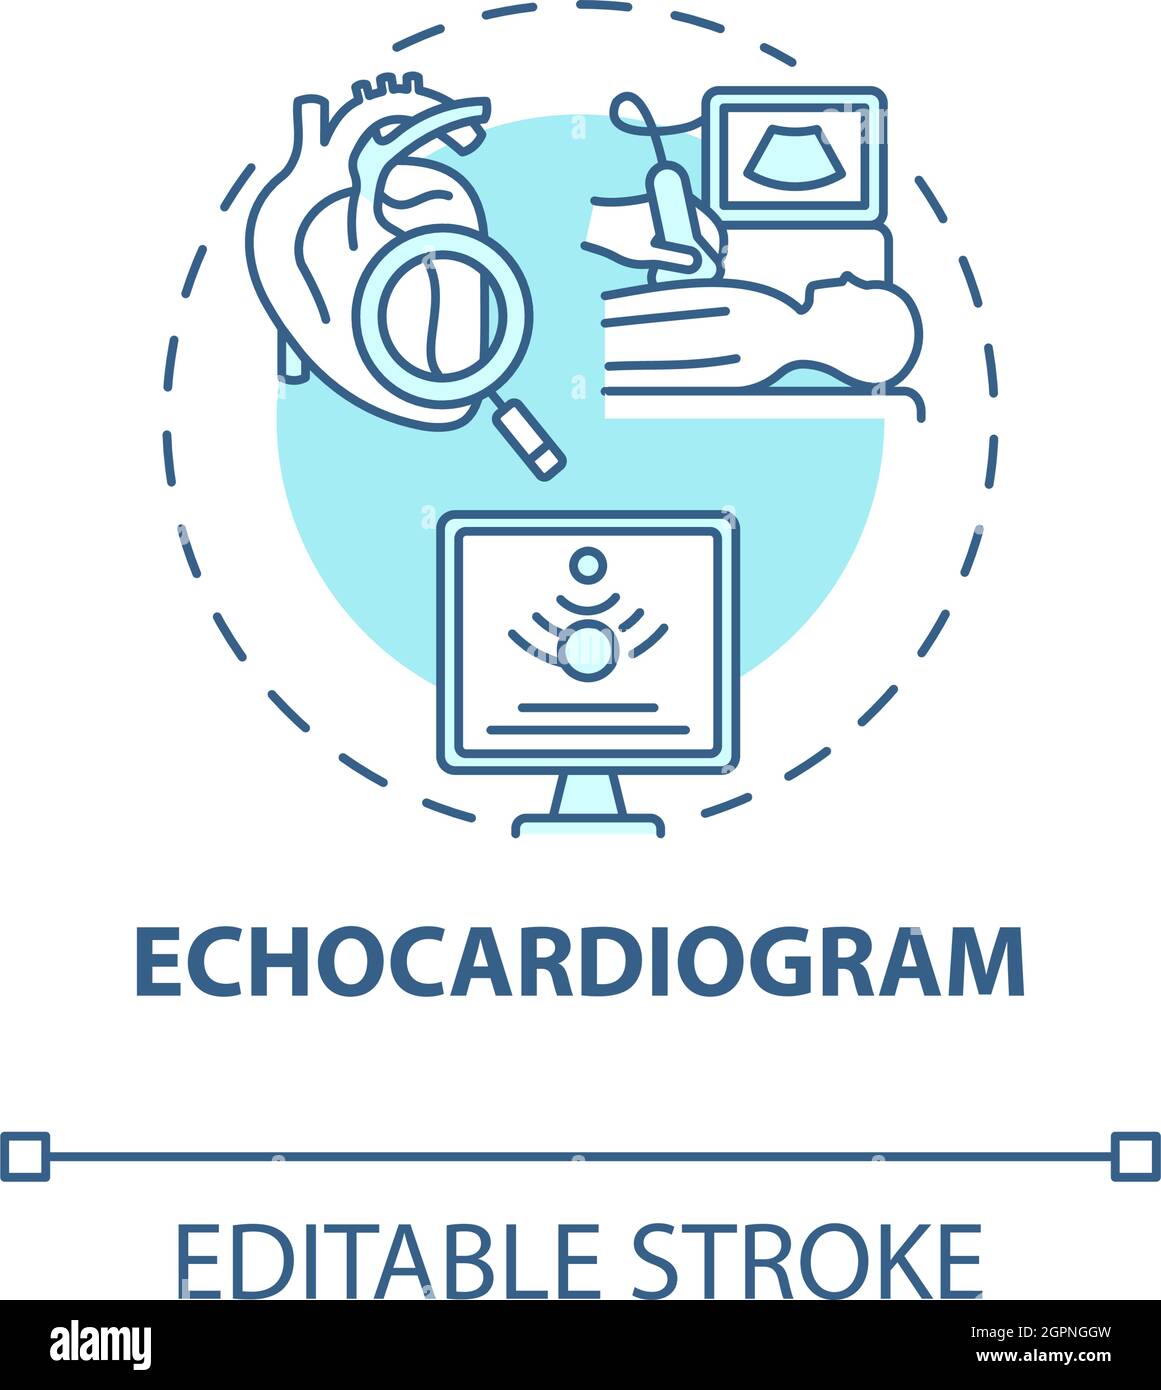 Echocardiogram concept icon Stock Vector